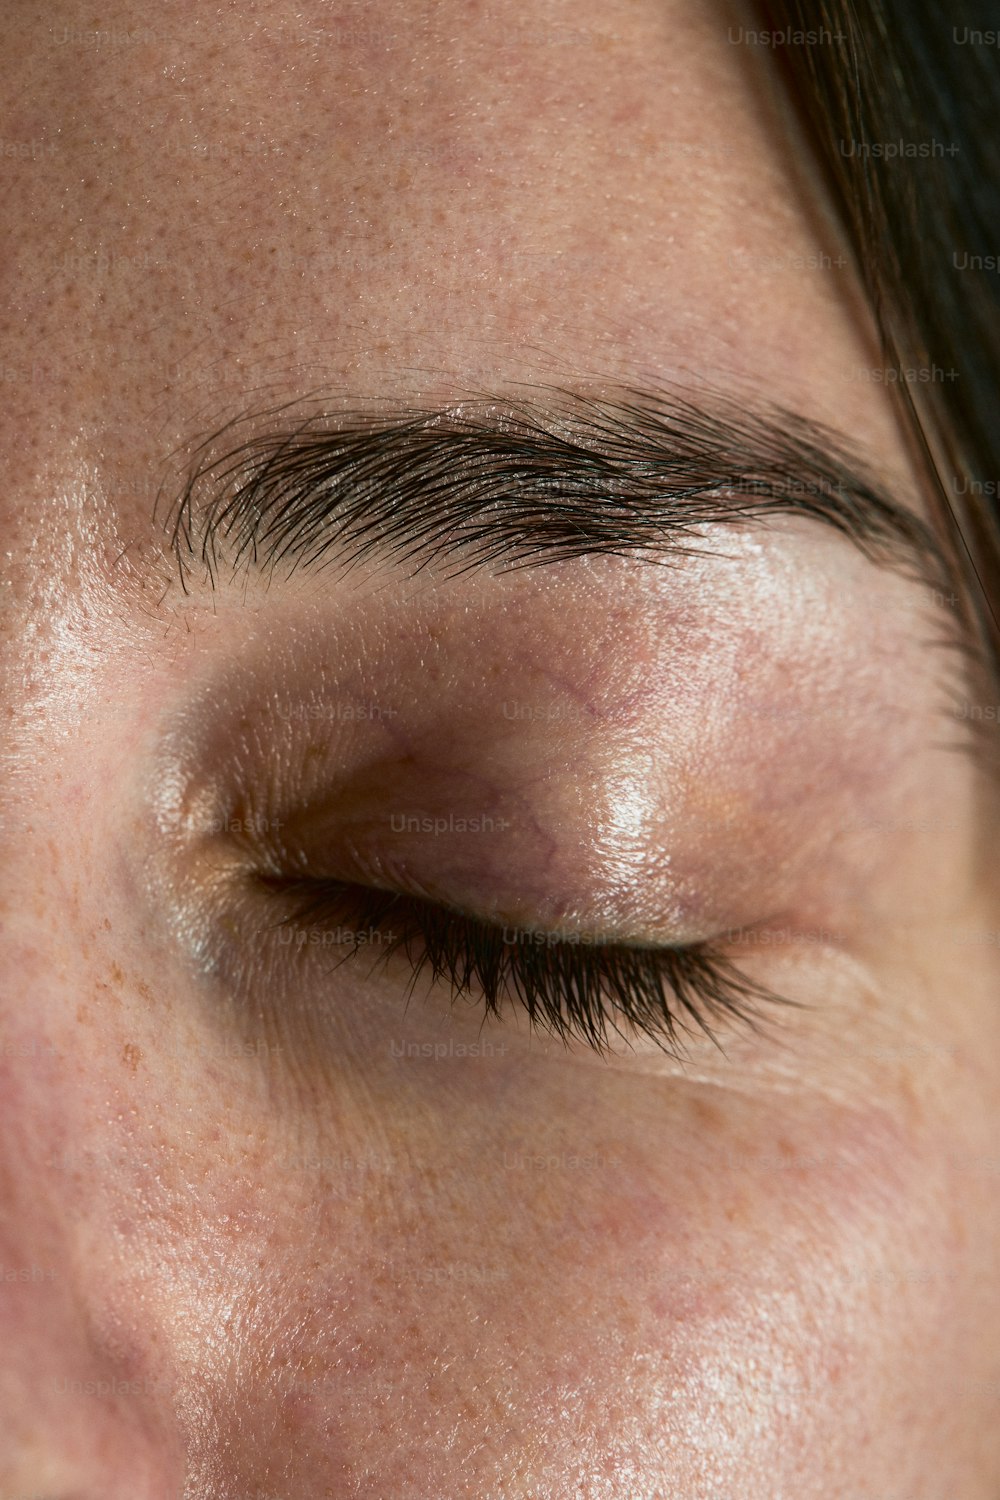 Un primer plano del ojo de una persona con una mancha marrón